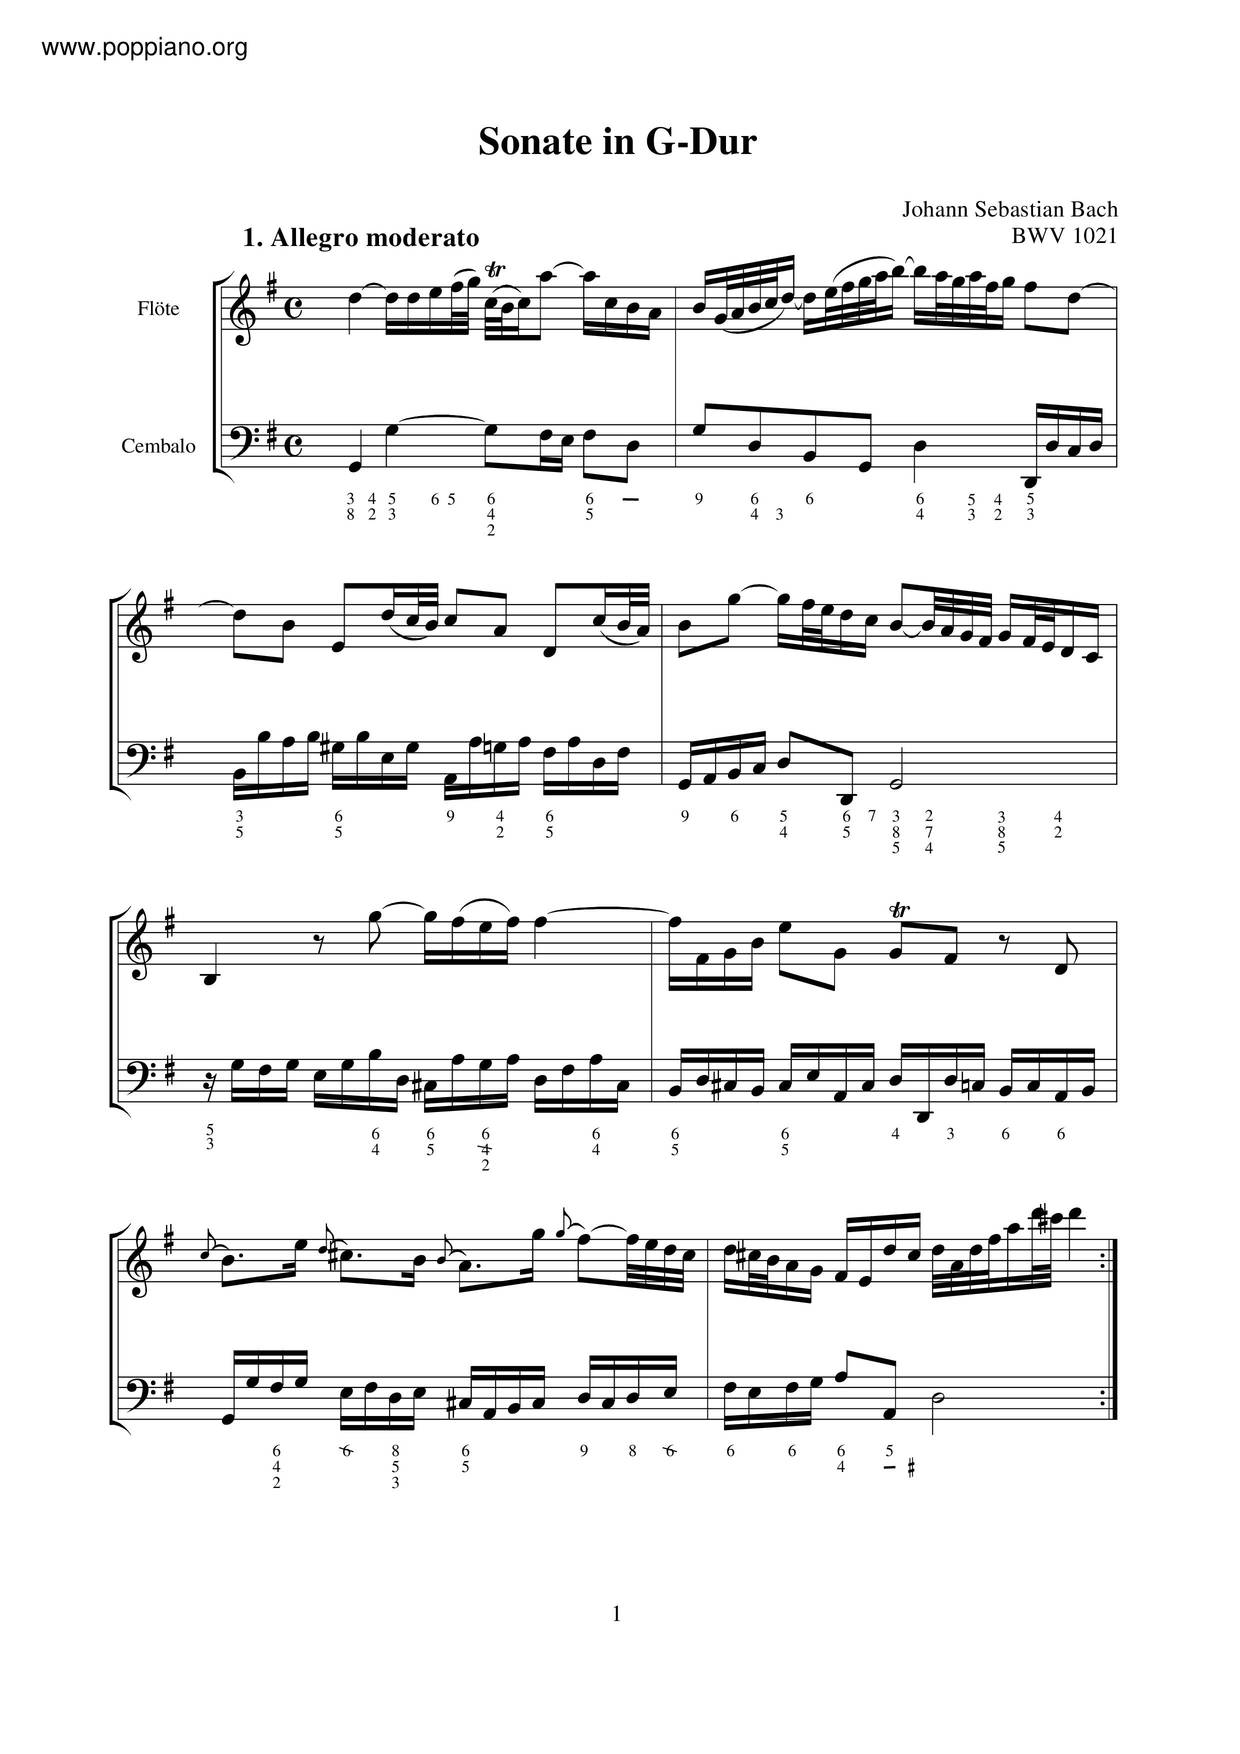 Violin Sonata In G Major, BWV 1021 Score